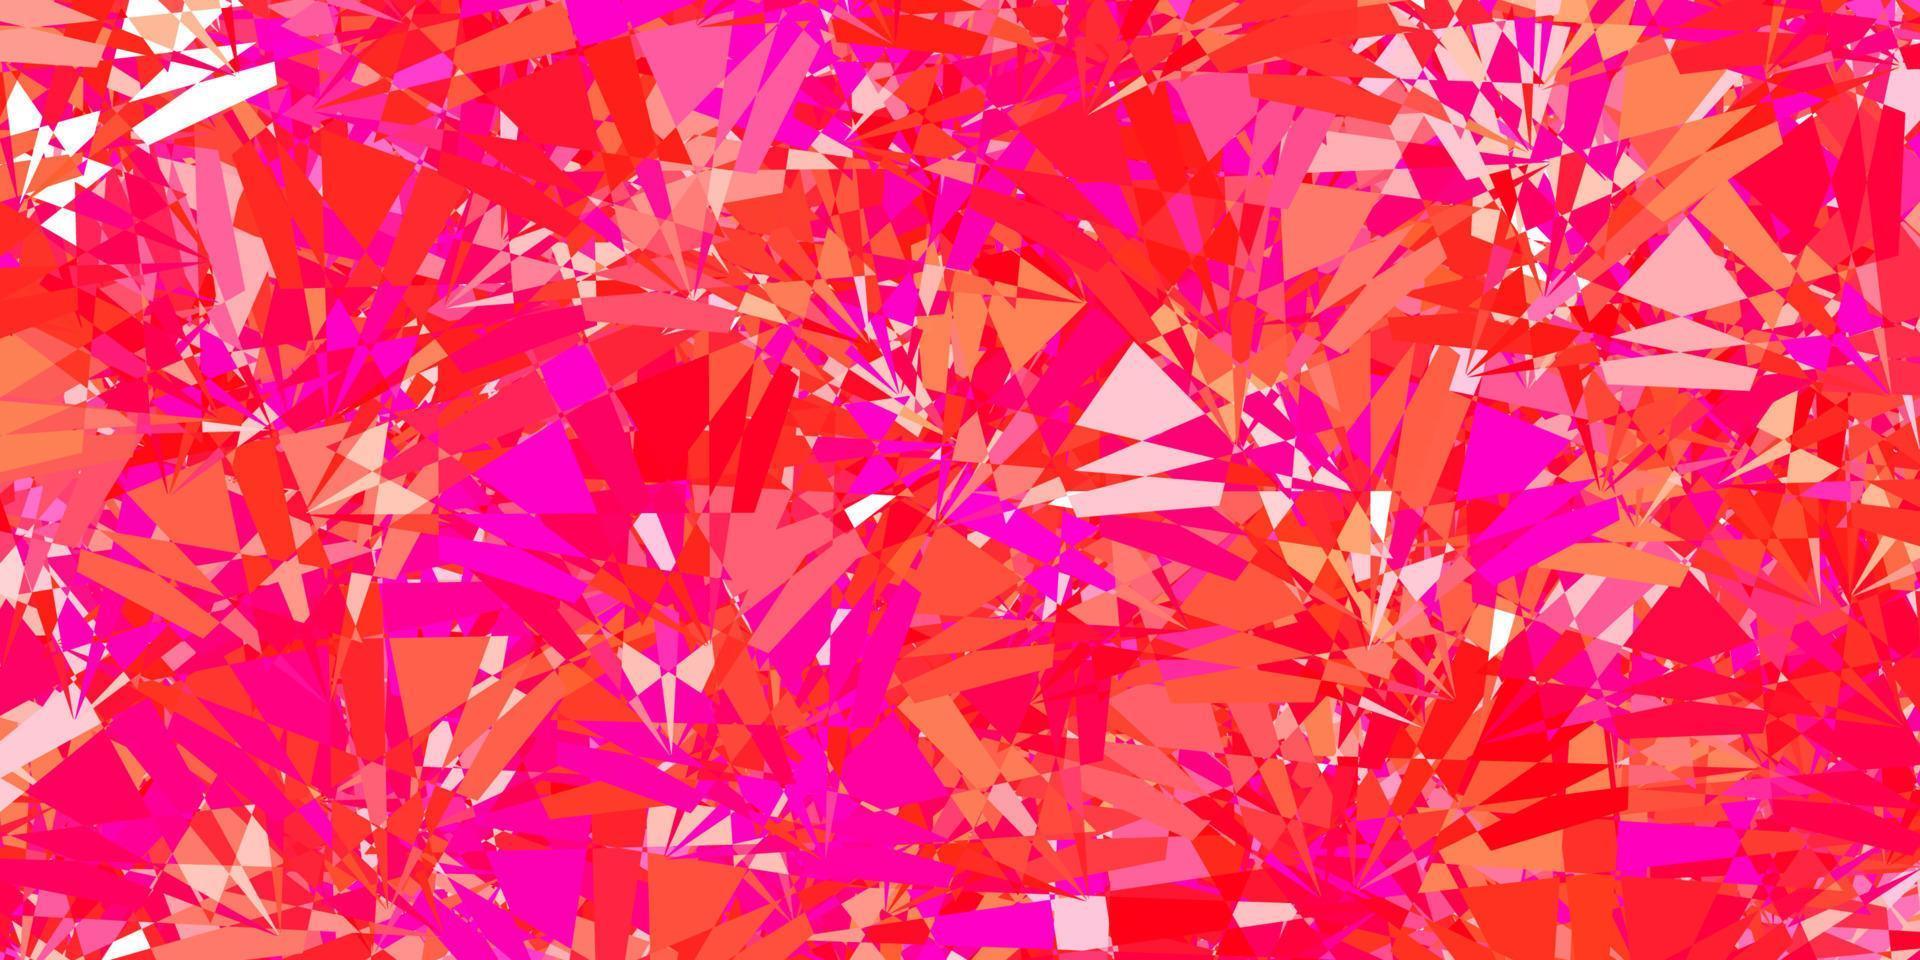 plantilla de vector rosa claro con formas triangulares.